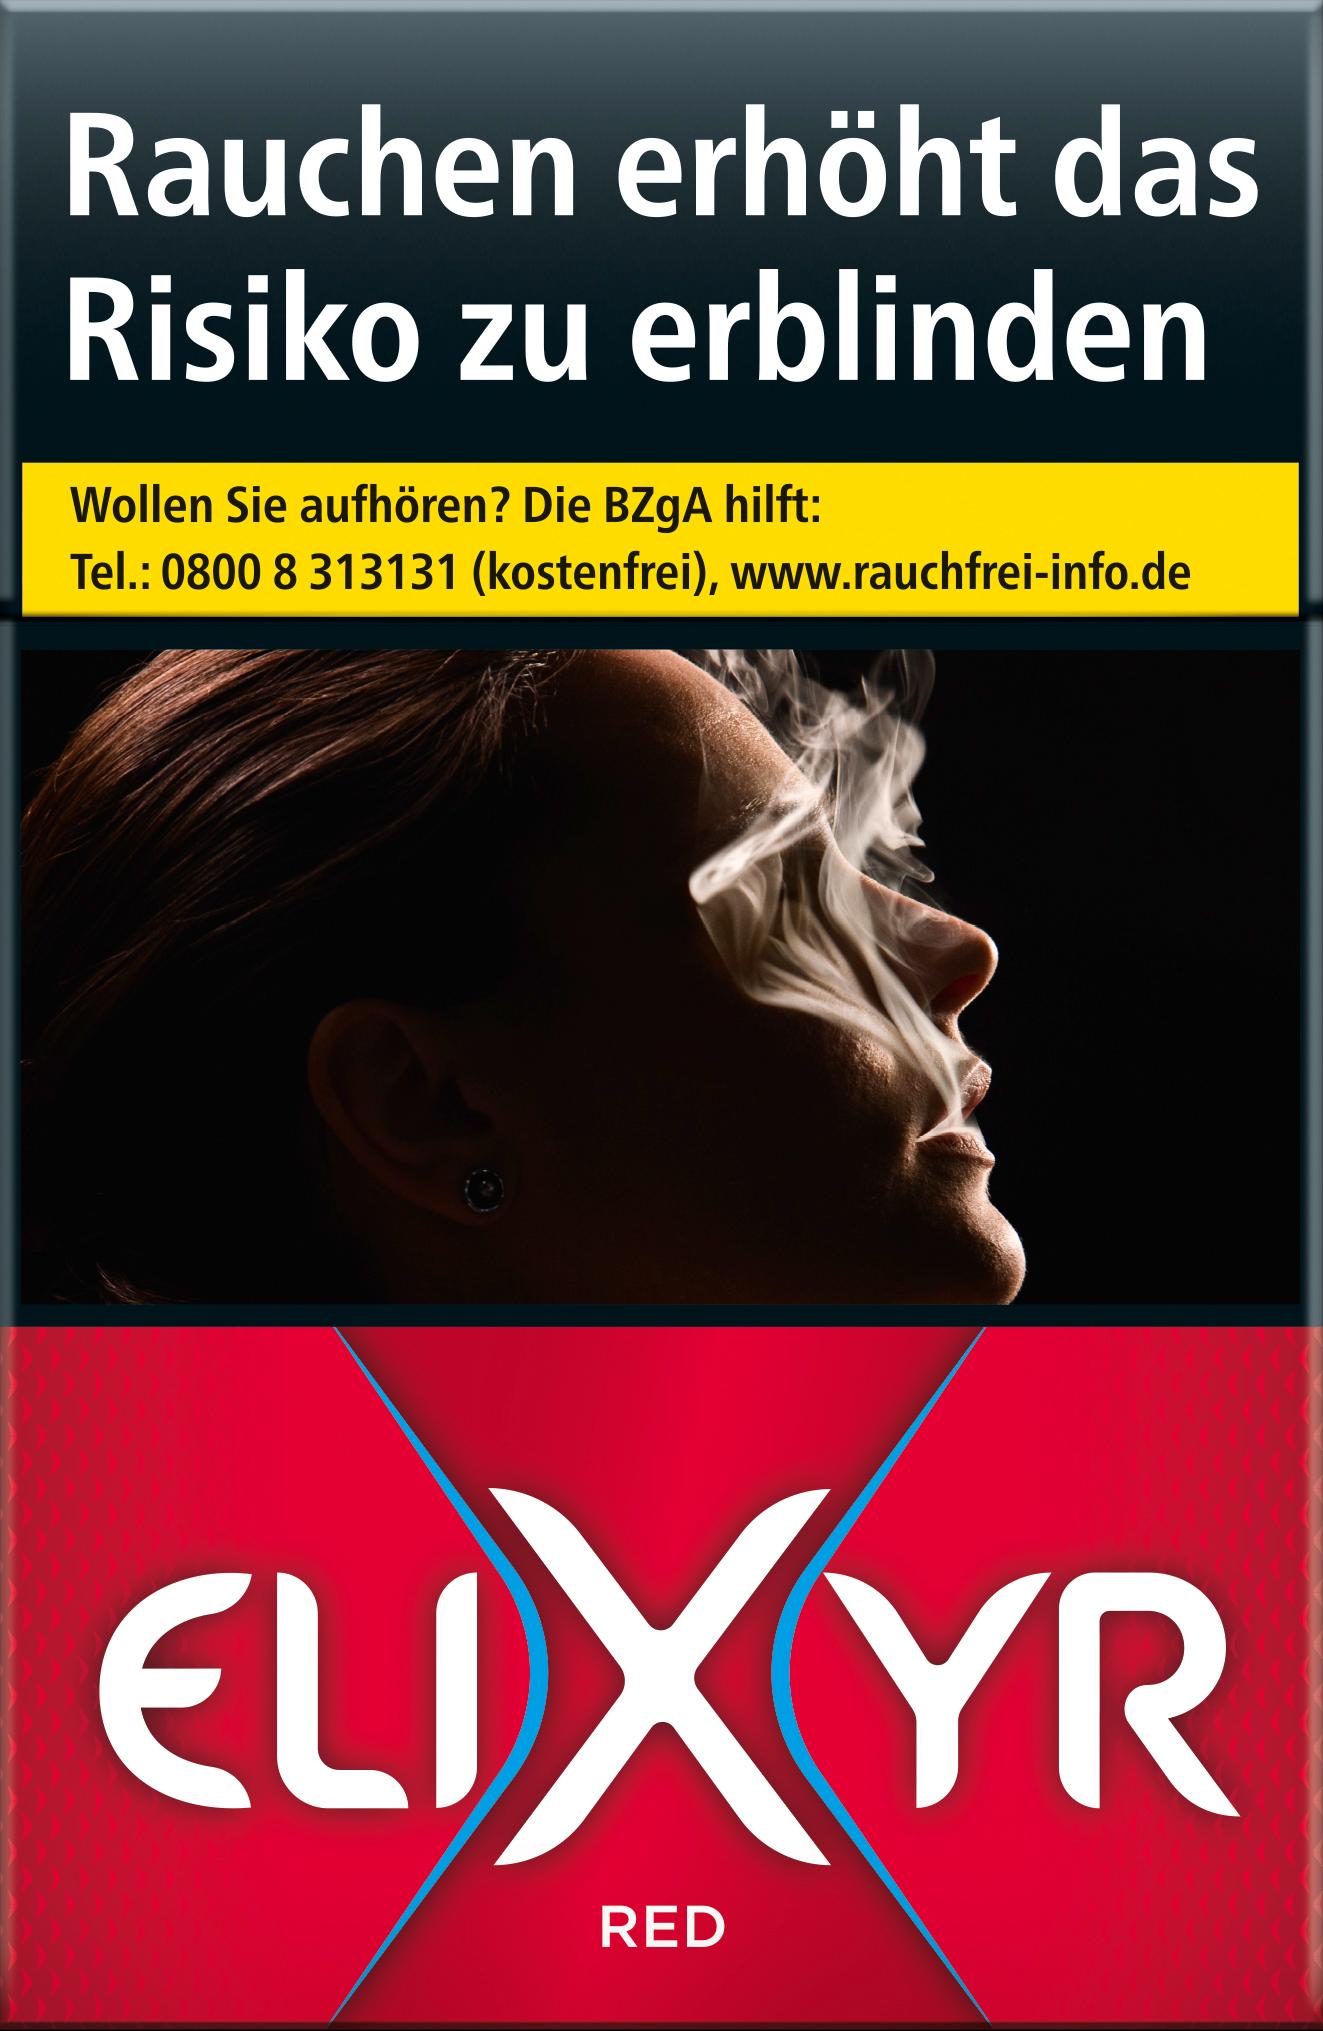 Elixyr Zigaretten Red 1 Packung